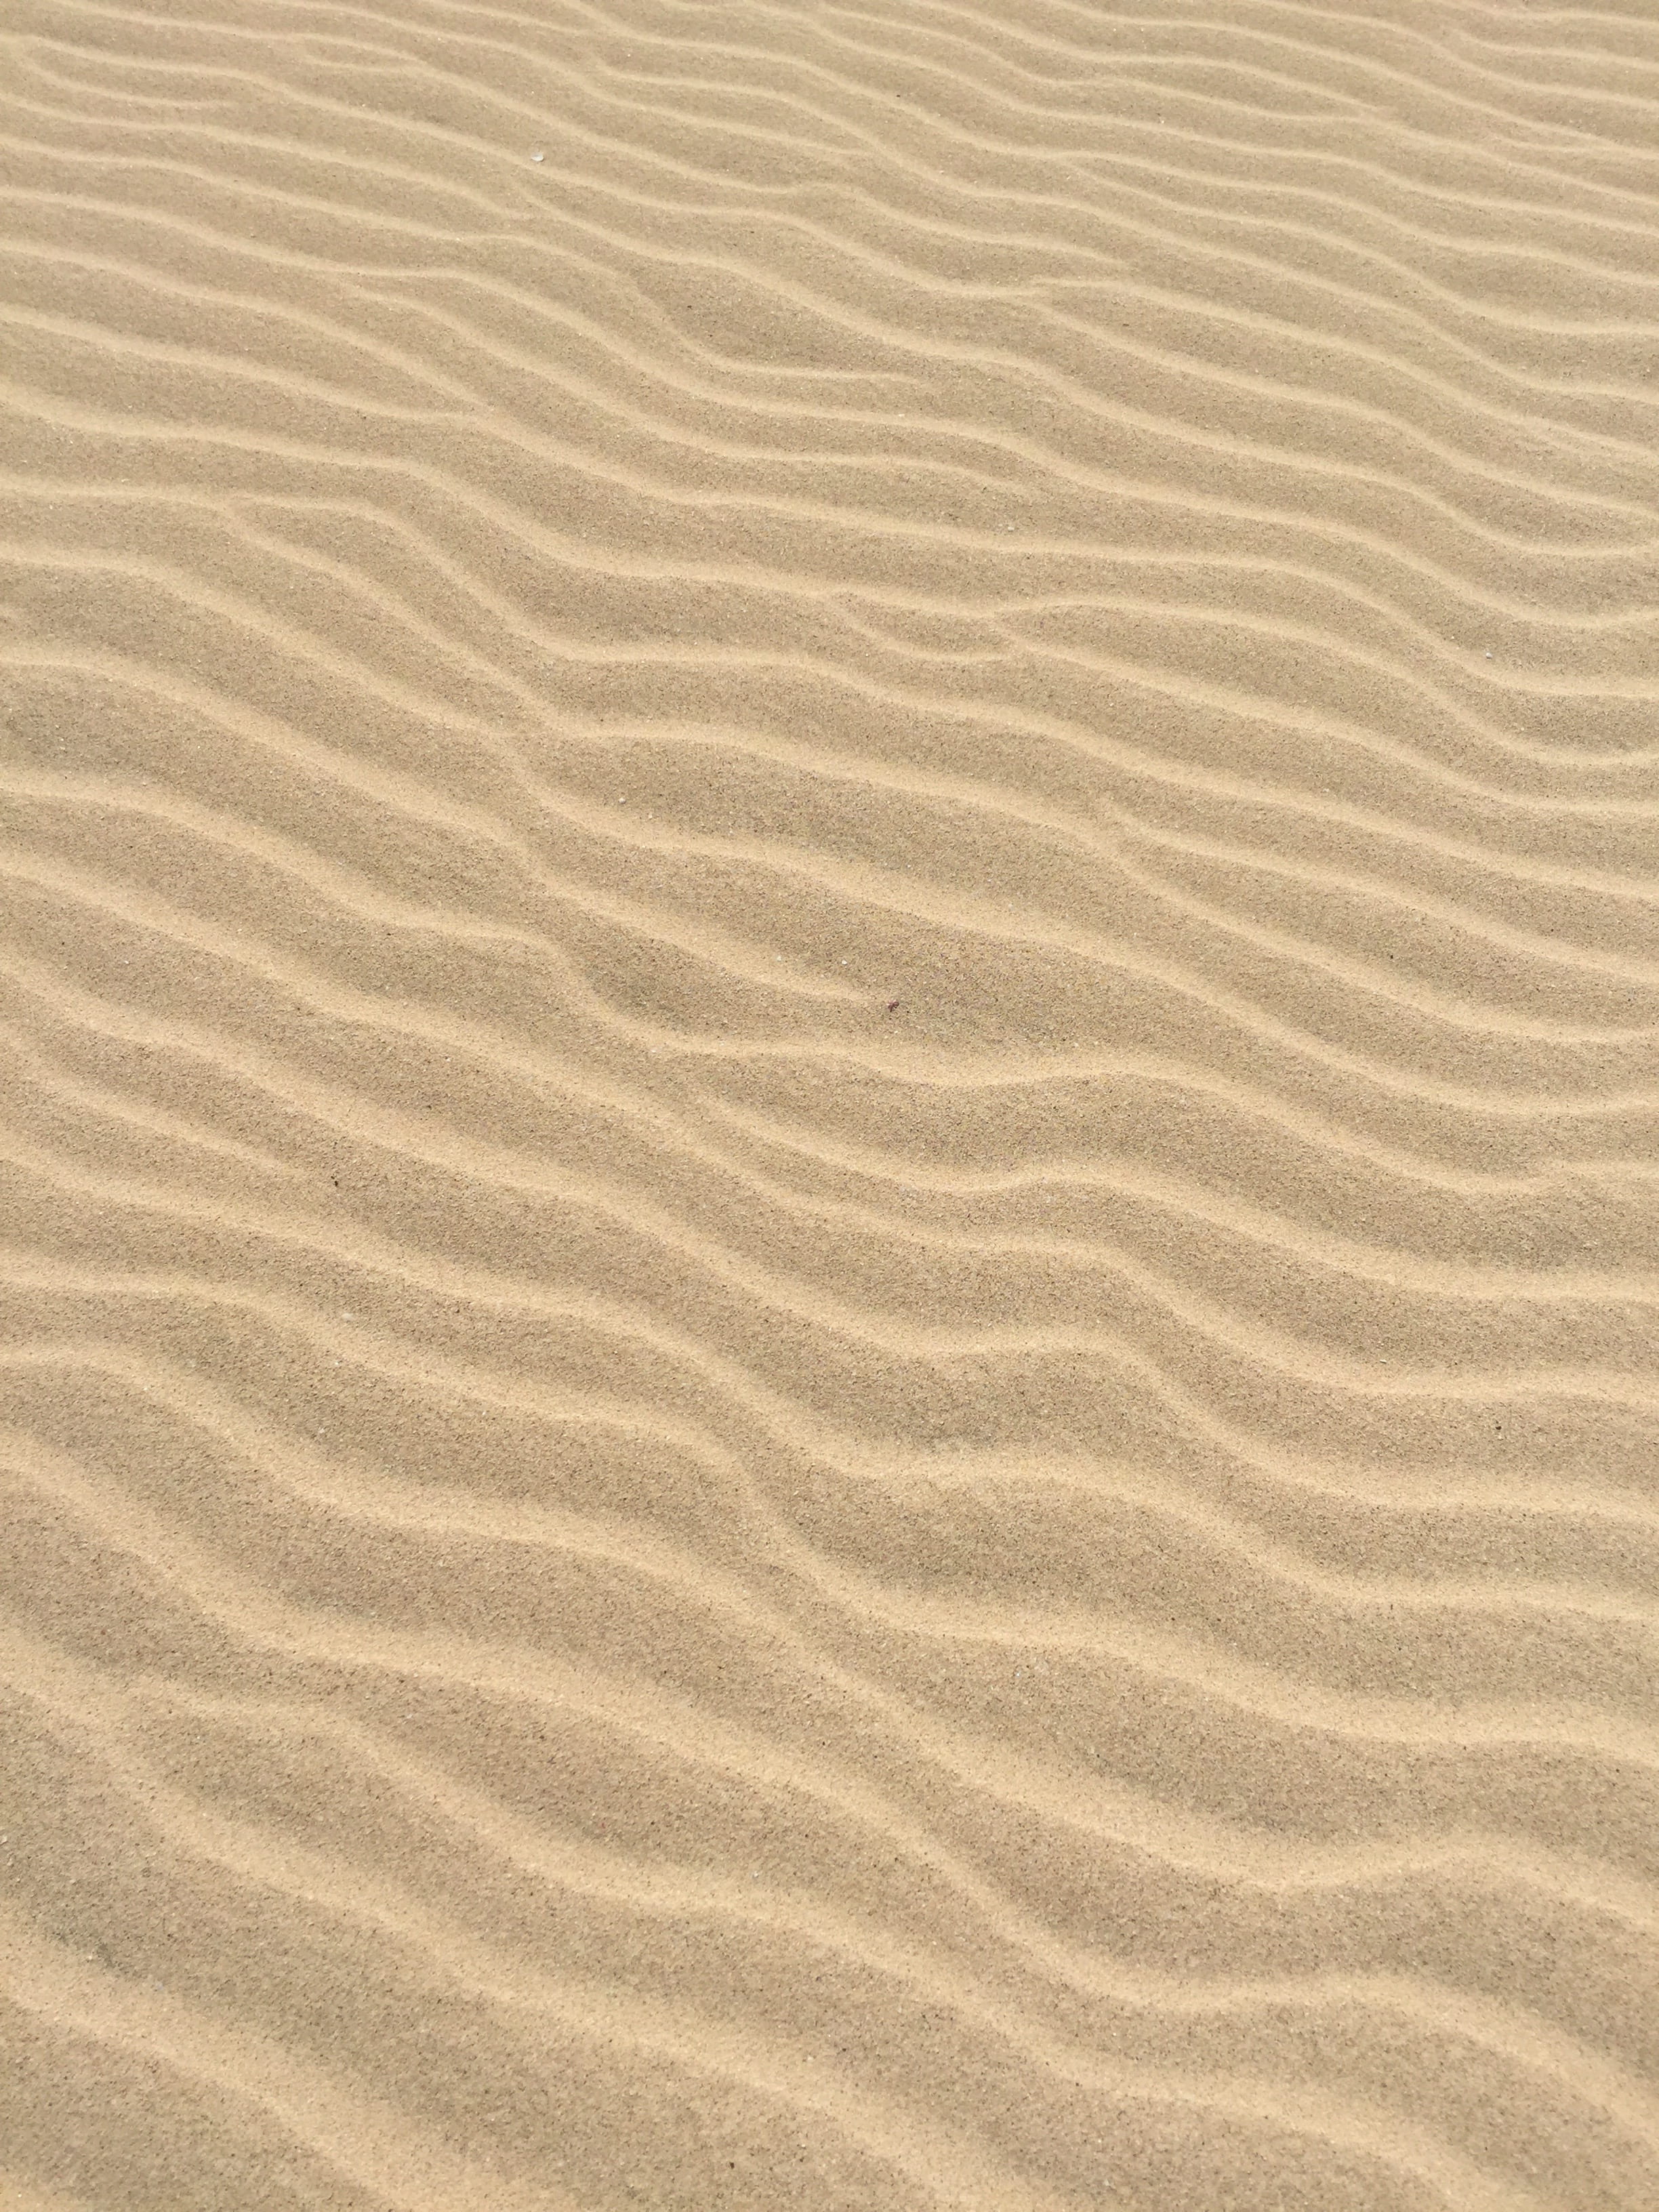 brown sands, beige sand, sand ripple, texture, pattern, sand texture